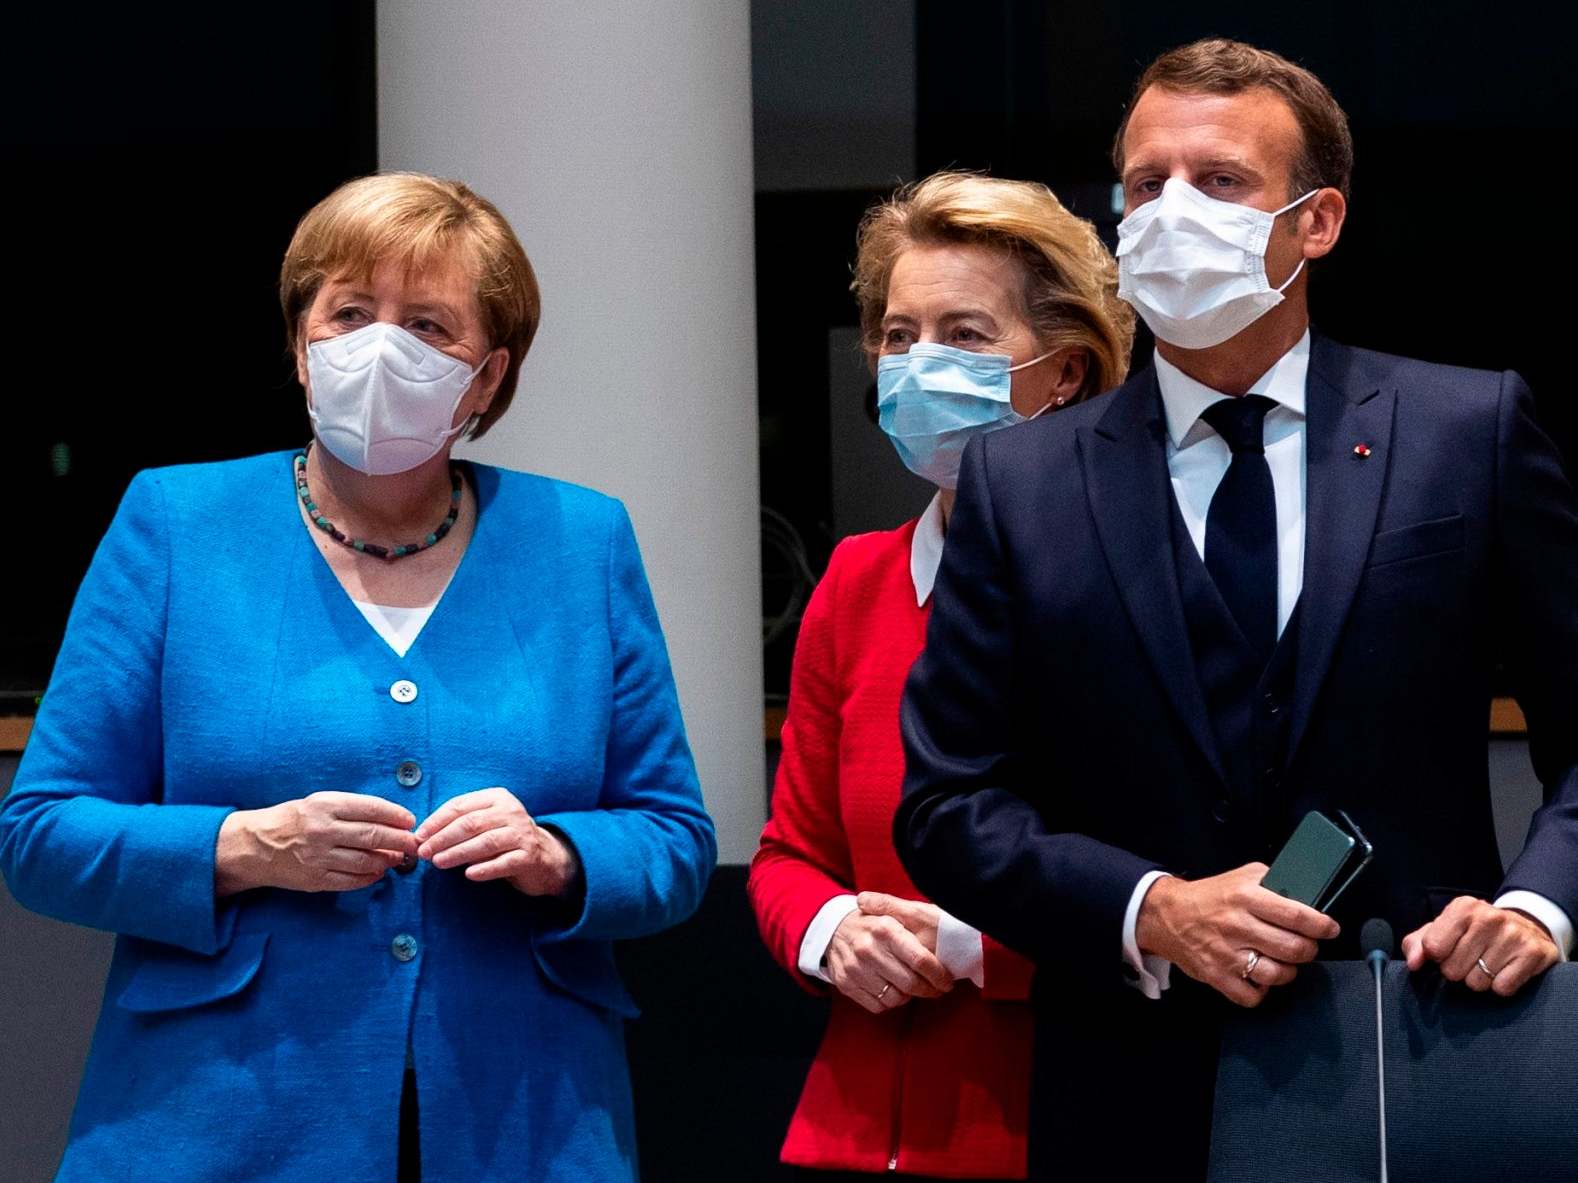 Angela Merkel with Ursula von der Leyen and Emmanuel Macron